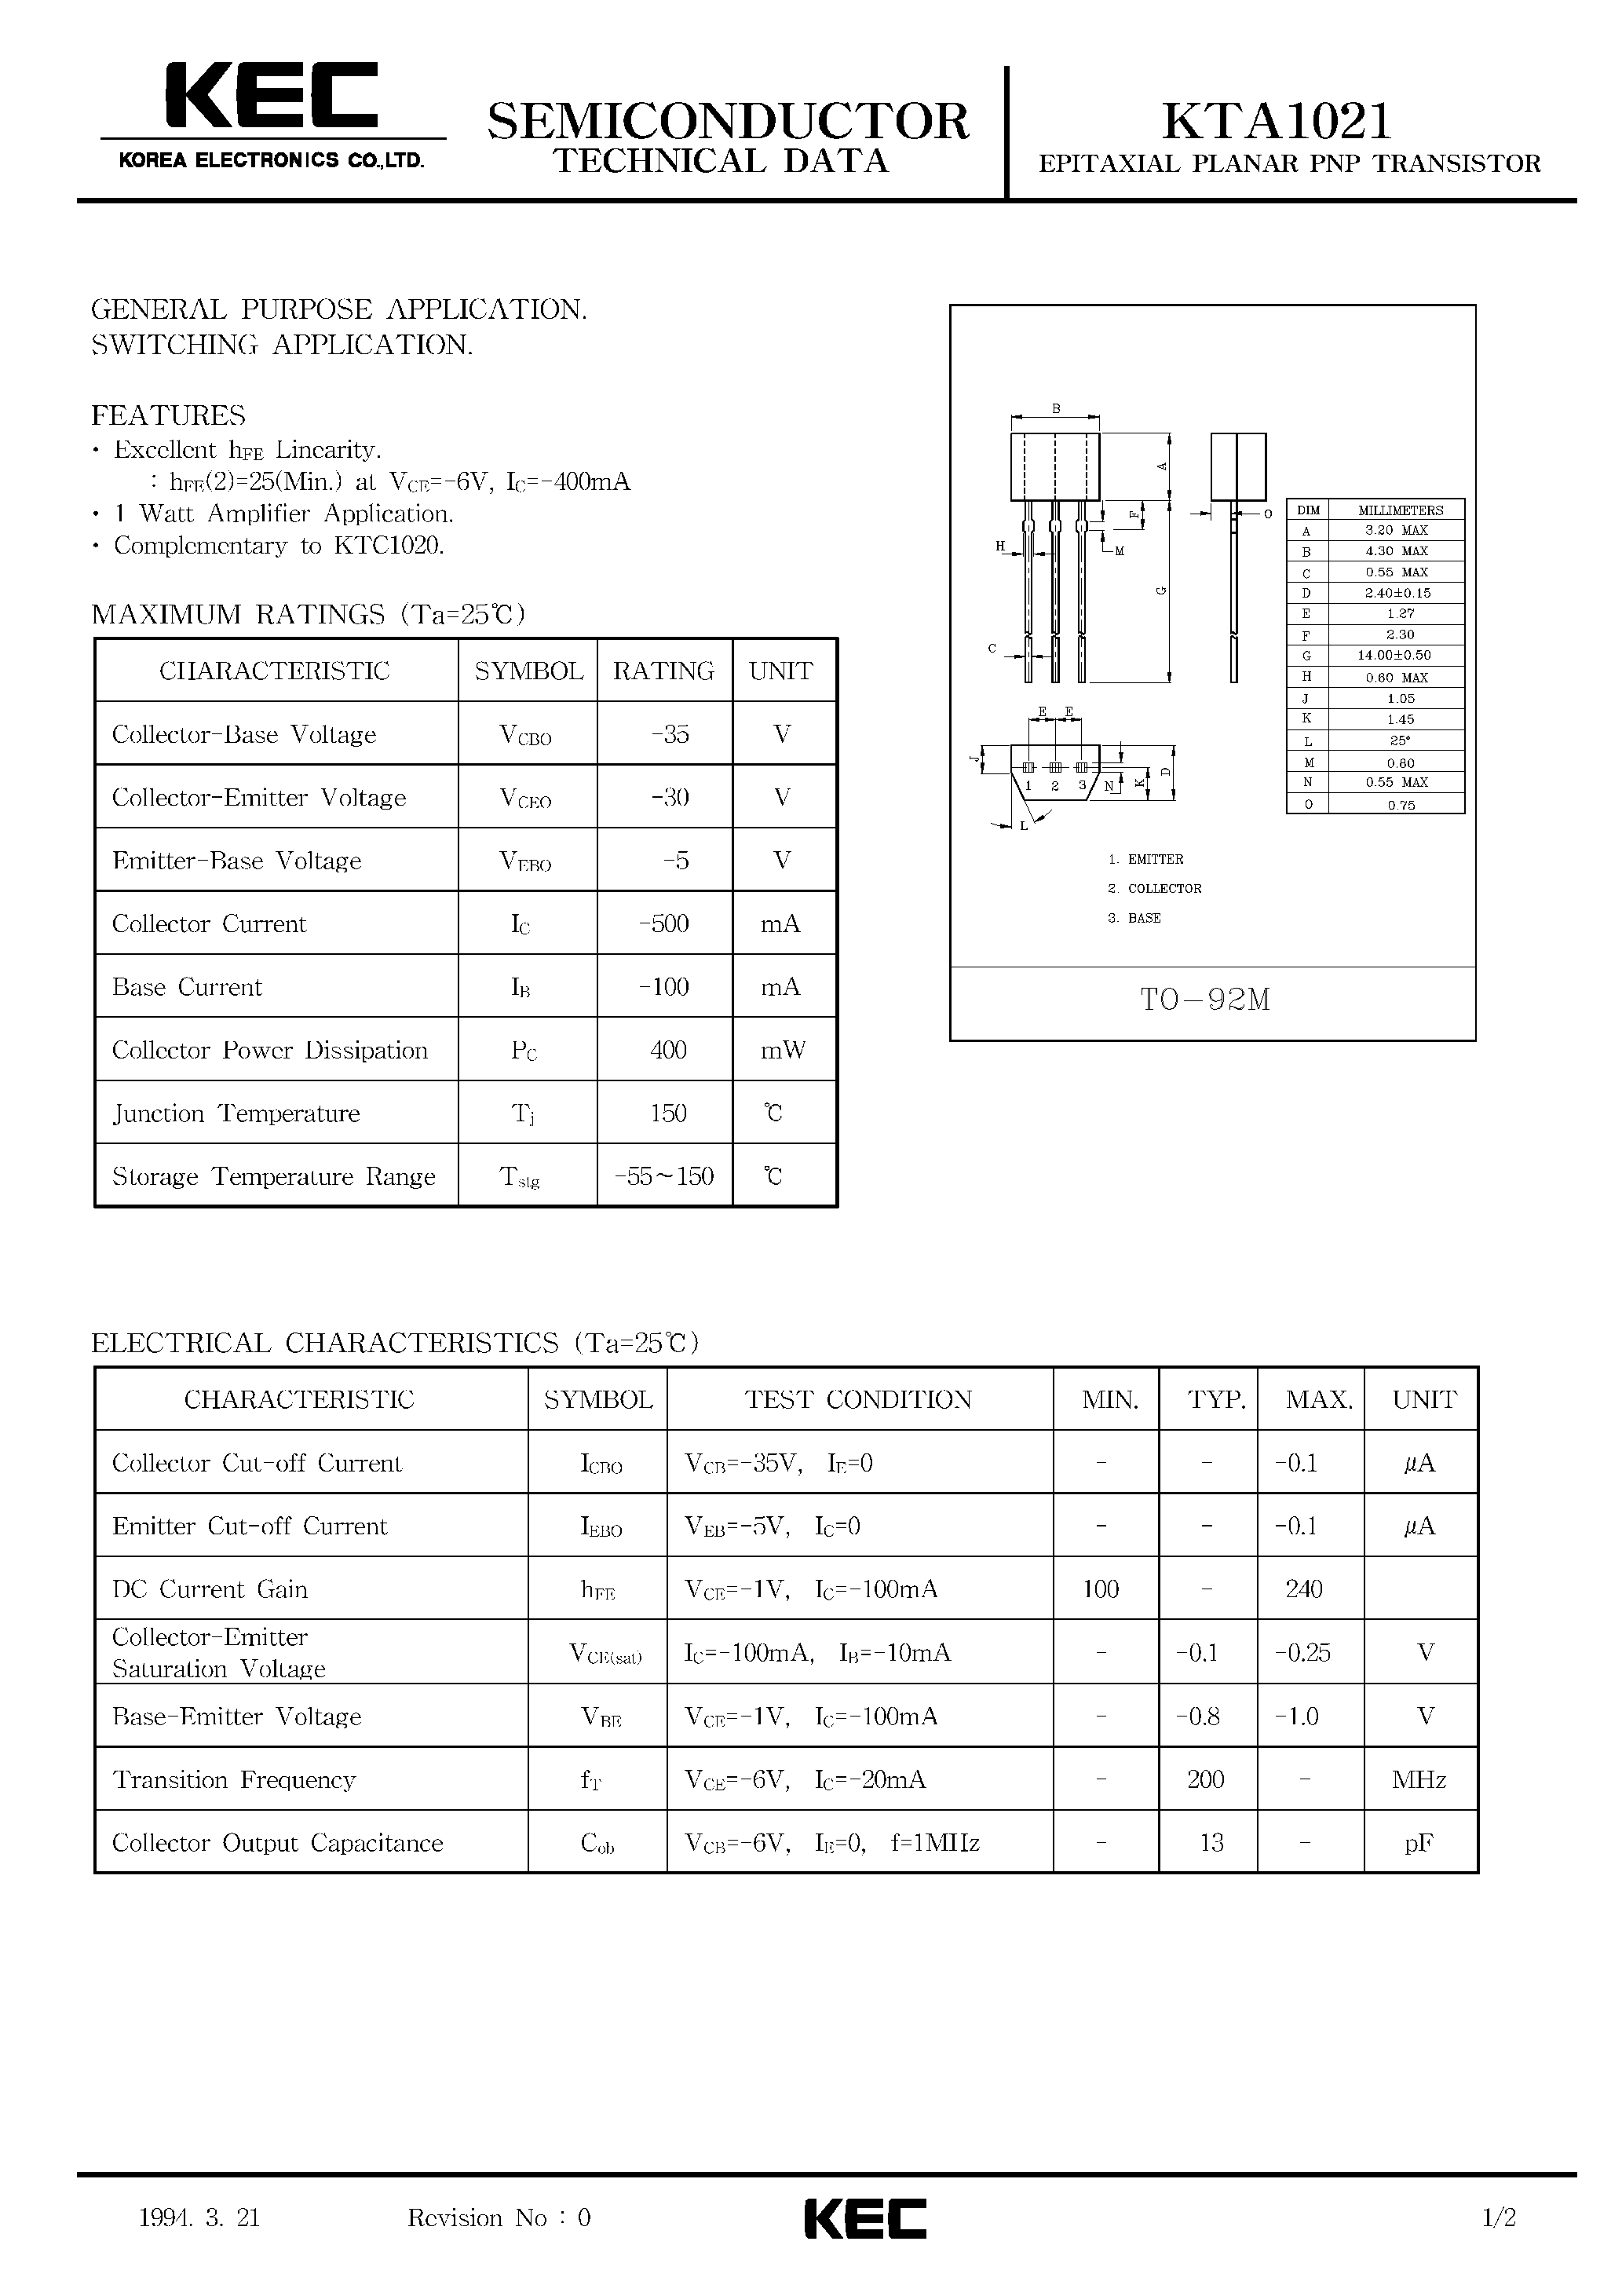 Datasheet KTA1021 - EPITAXIAL PLANAR PNP TRANSISTOR (GENERAL PURPOSE/ SWITCHING) page 1